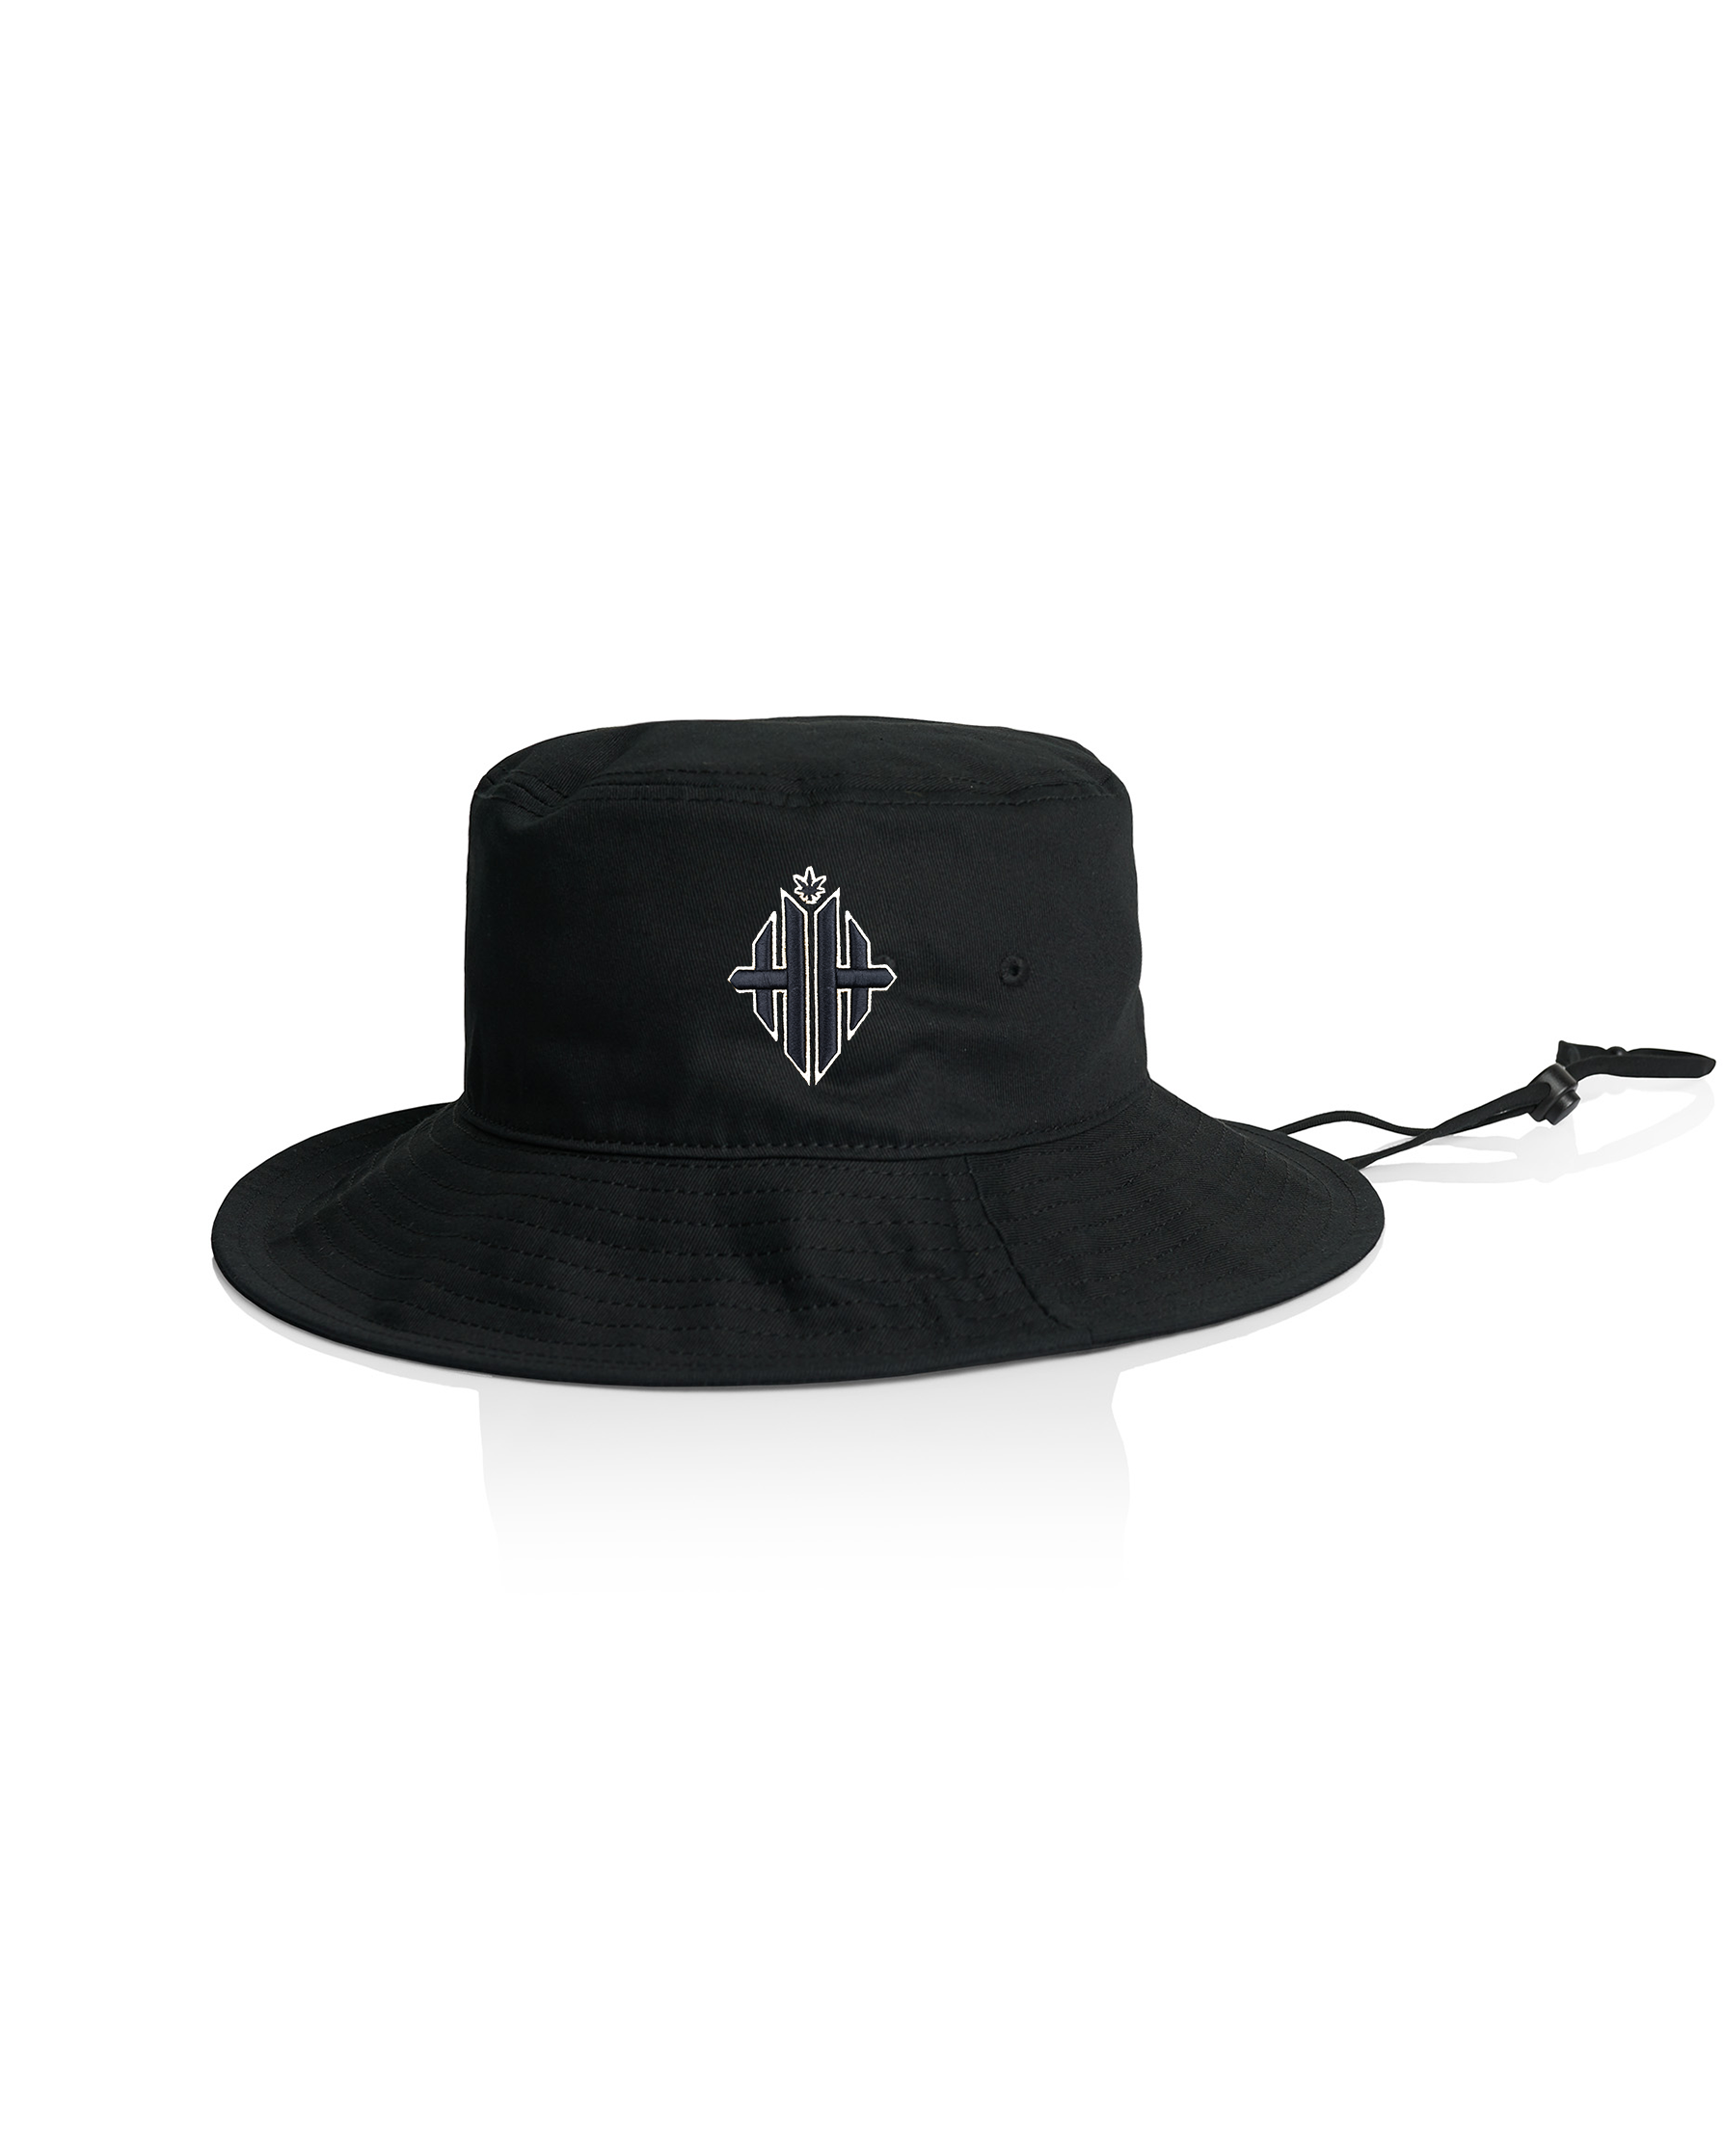 HH Monochrome Bucket Hat - Black/White